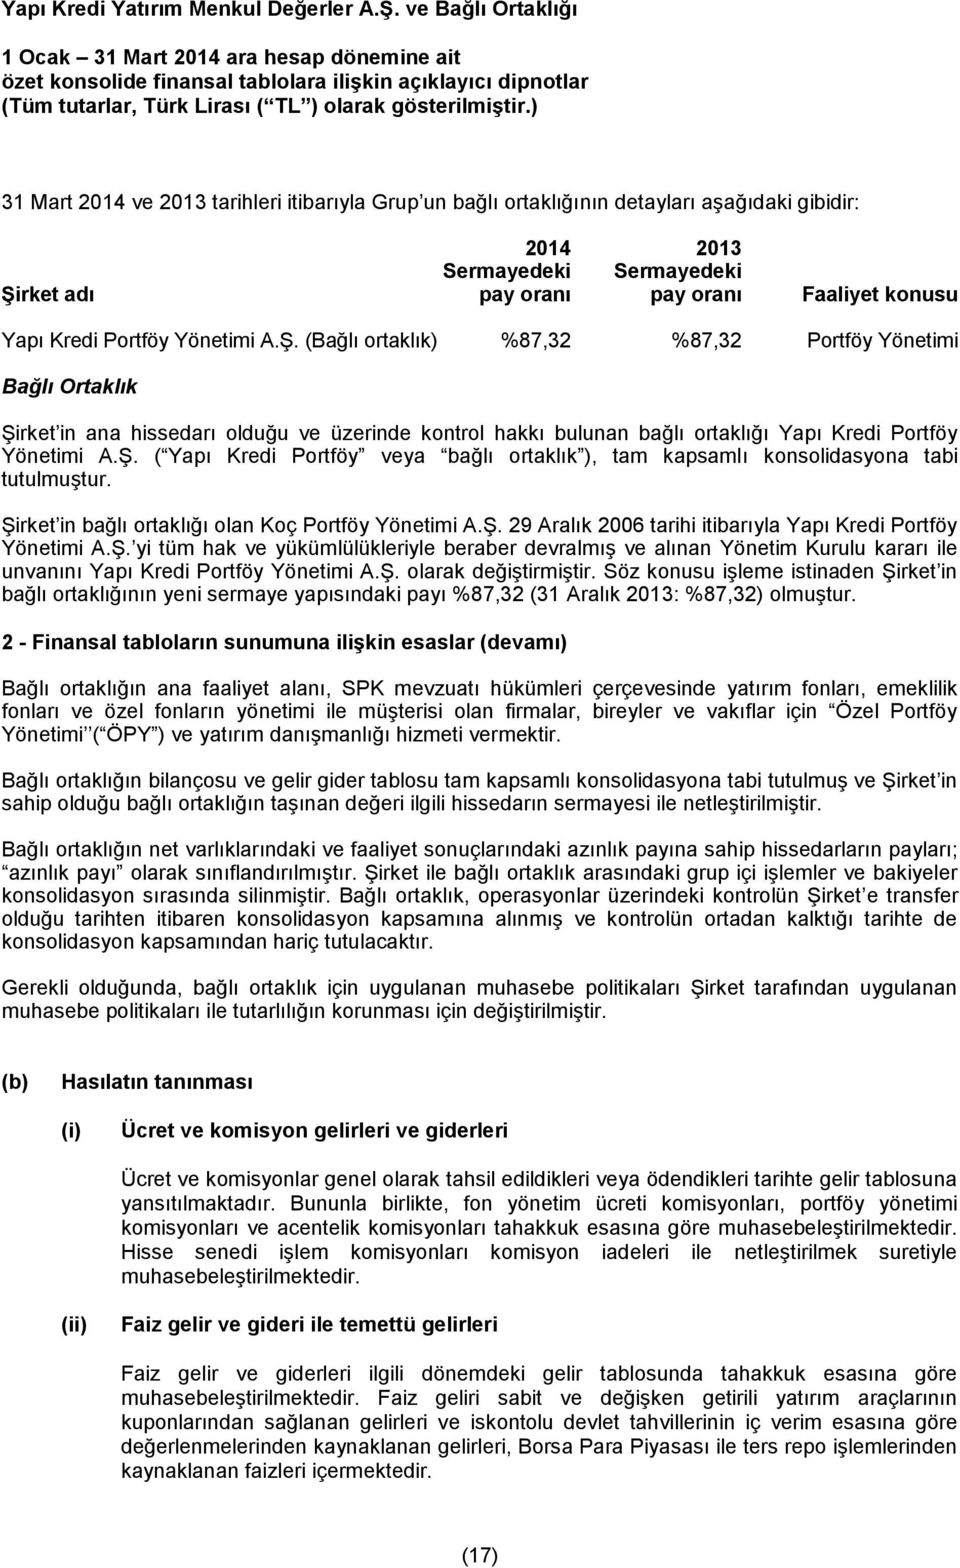 Şirket in bağlı ortaklığı olan Koç Portföy Yönetimi A.Ş. 29 Aralık 2006 tarihi itibarıyla Yapı Kredi Portföy Yönetimi A.Ş. yi tüm hak ve yükümlülükleriyle beraber devralmış ve alınan Yönetim Kurulu kararı ile unvanını Yapı Kredi Portföy Yönetimi A.